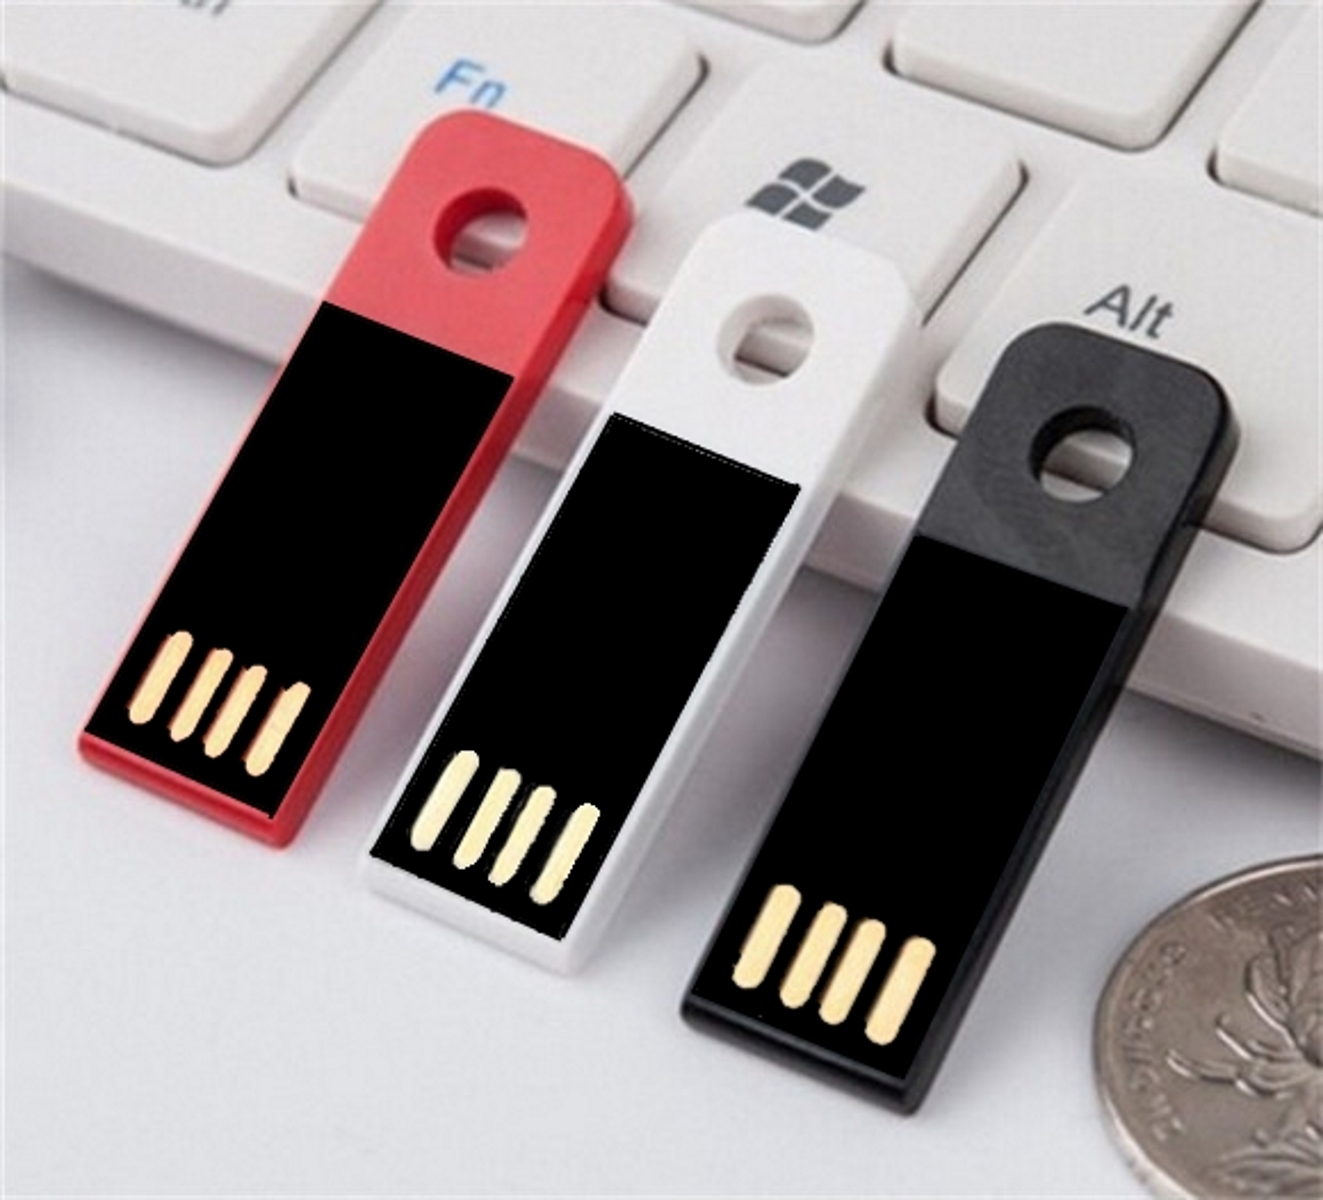 GERMANY GB) 128 Mini ® Slim USB USB-Stick (Weiß,